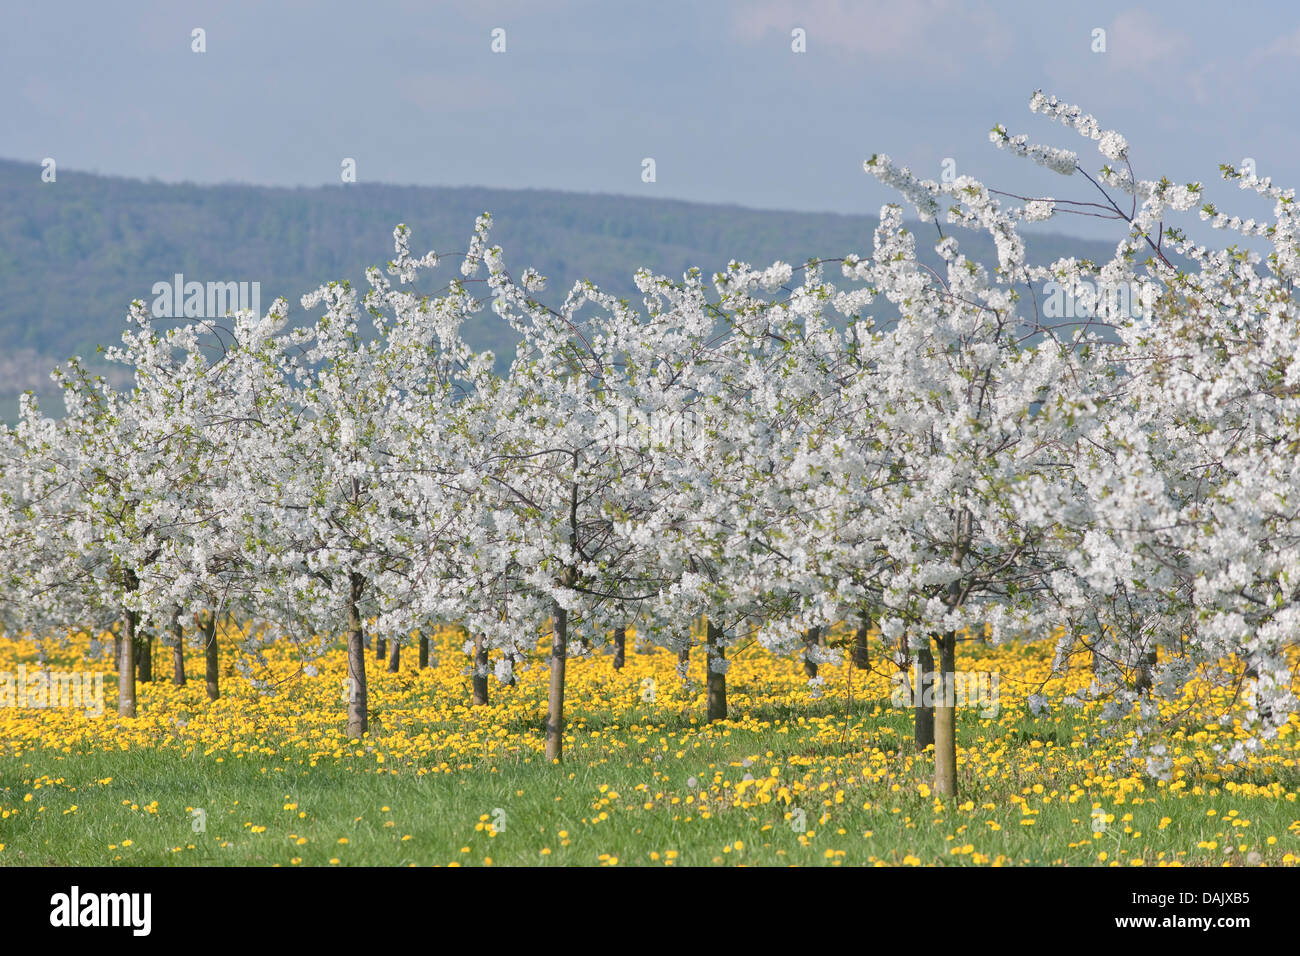 White flowering cherry tree plantation, Wild Cherry or Sweet Cherry (Prunus avium) with yellow Dandelions (Taraxacum officinale) Stock Photo